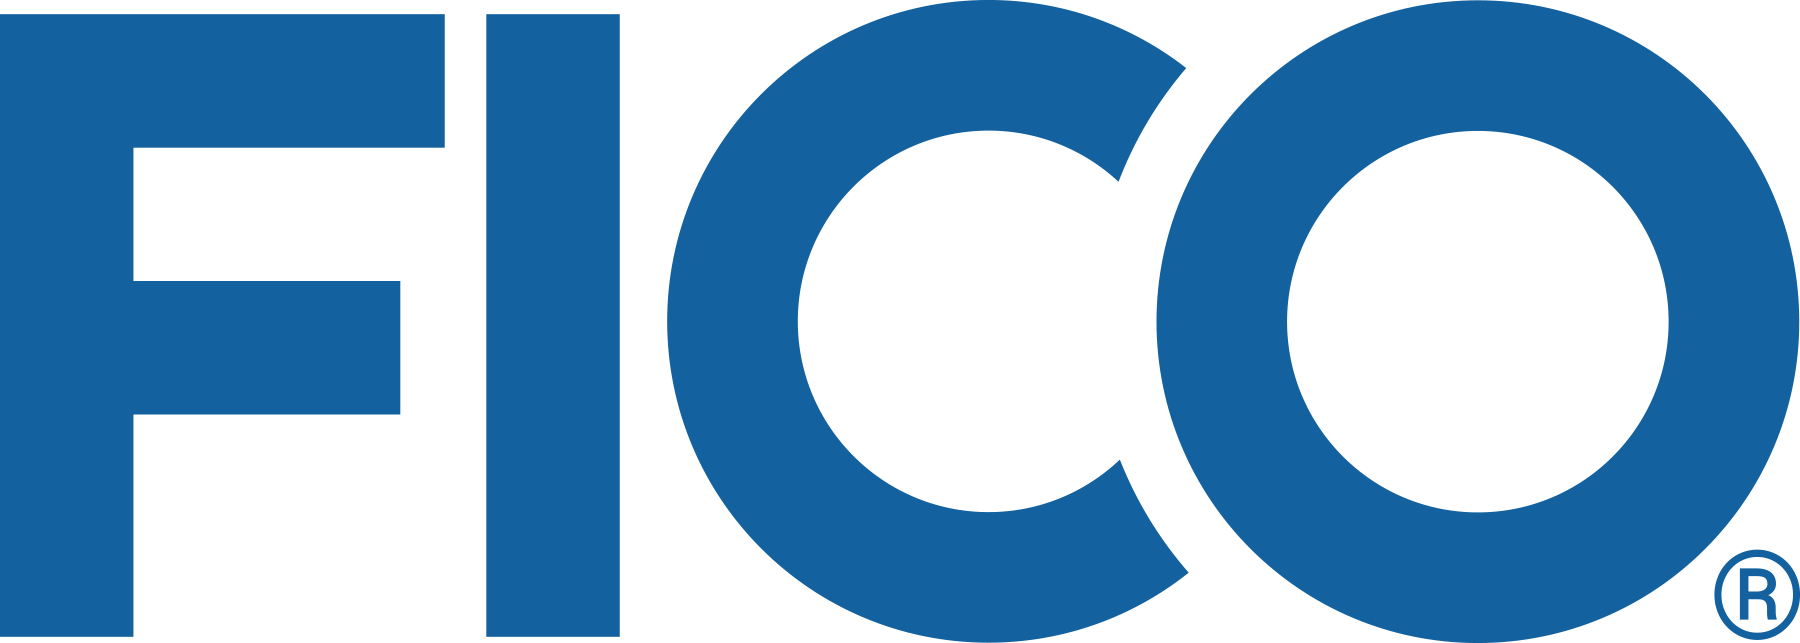 FICO_logo_blue_2019